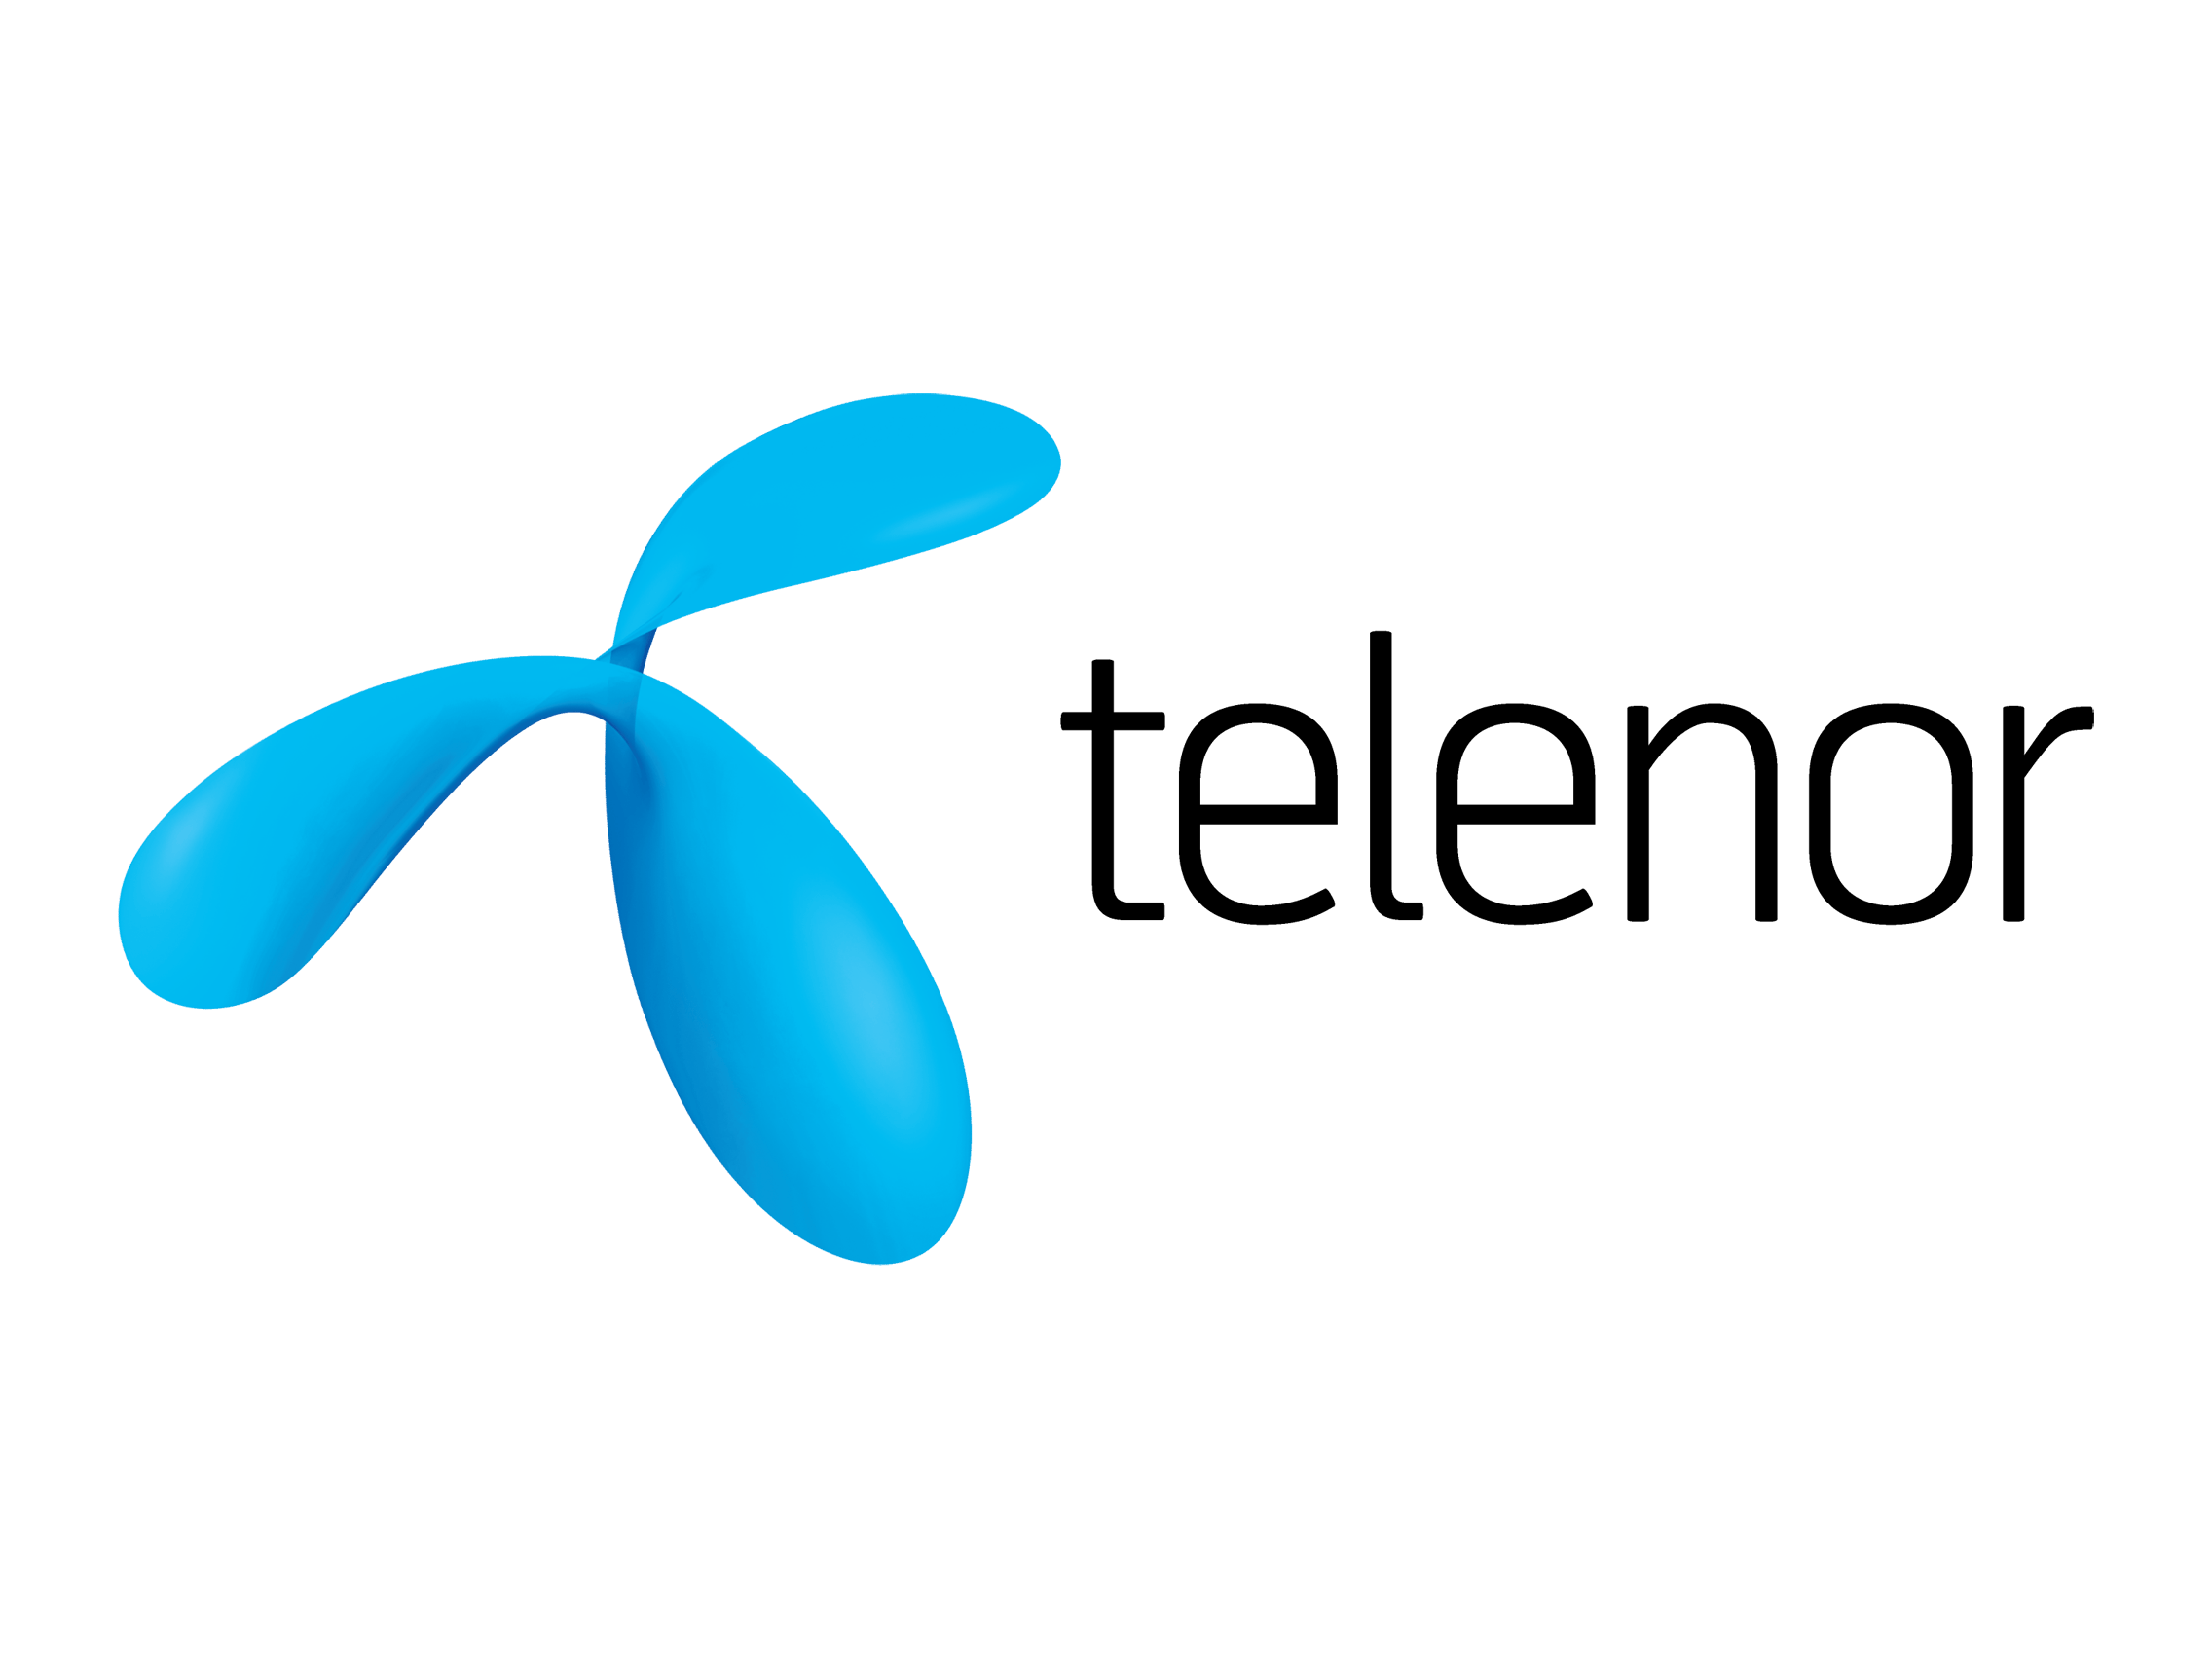 Telecom Company Logo - Telenor logo | Logok